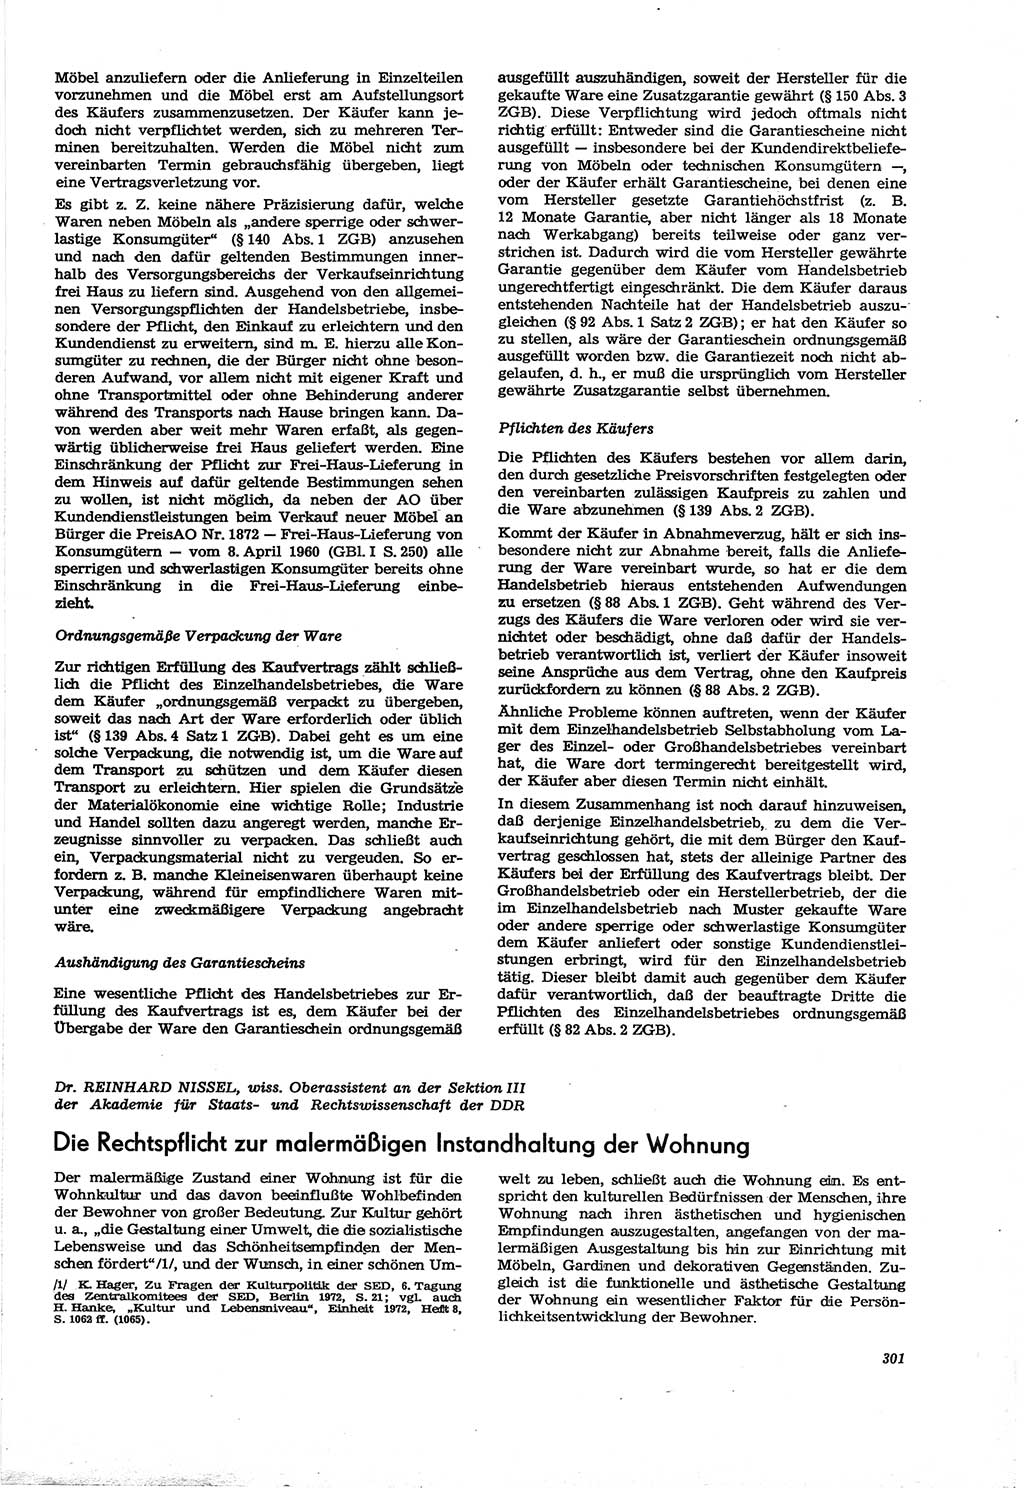 Neue Justiz (NJ), Zeitschrift für Recht und Rechtswissenschaft [Deutsche Demokratische Republik (DDR)], 30. Jahrgang 1976, Seite 301 (NJ DDR 1976, S. 301)